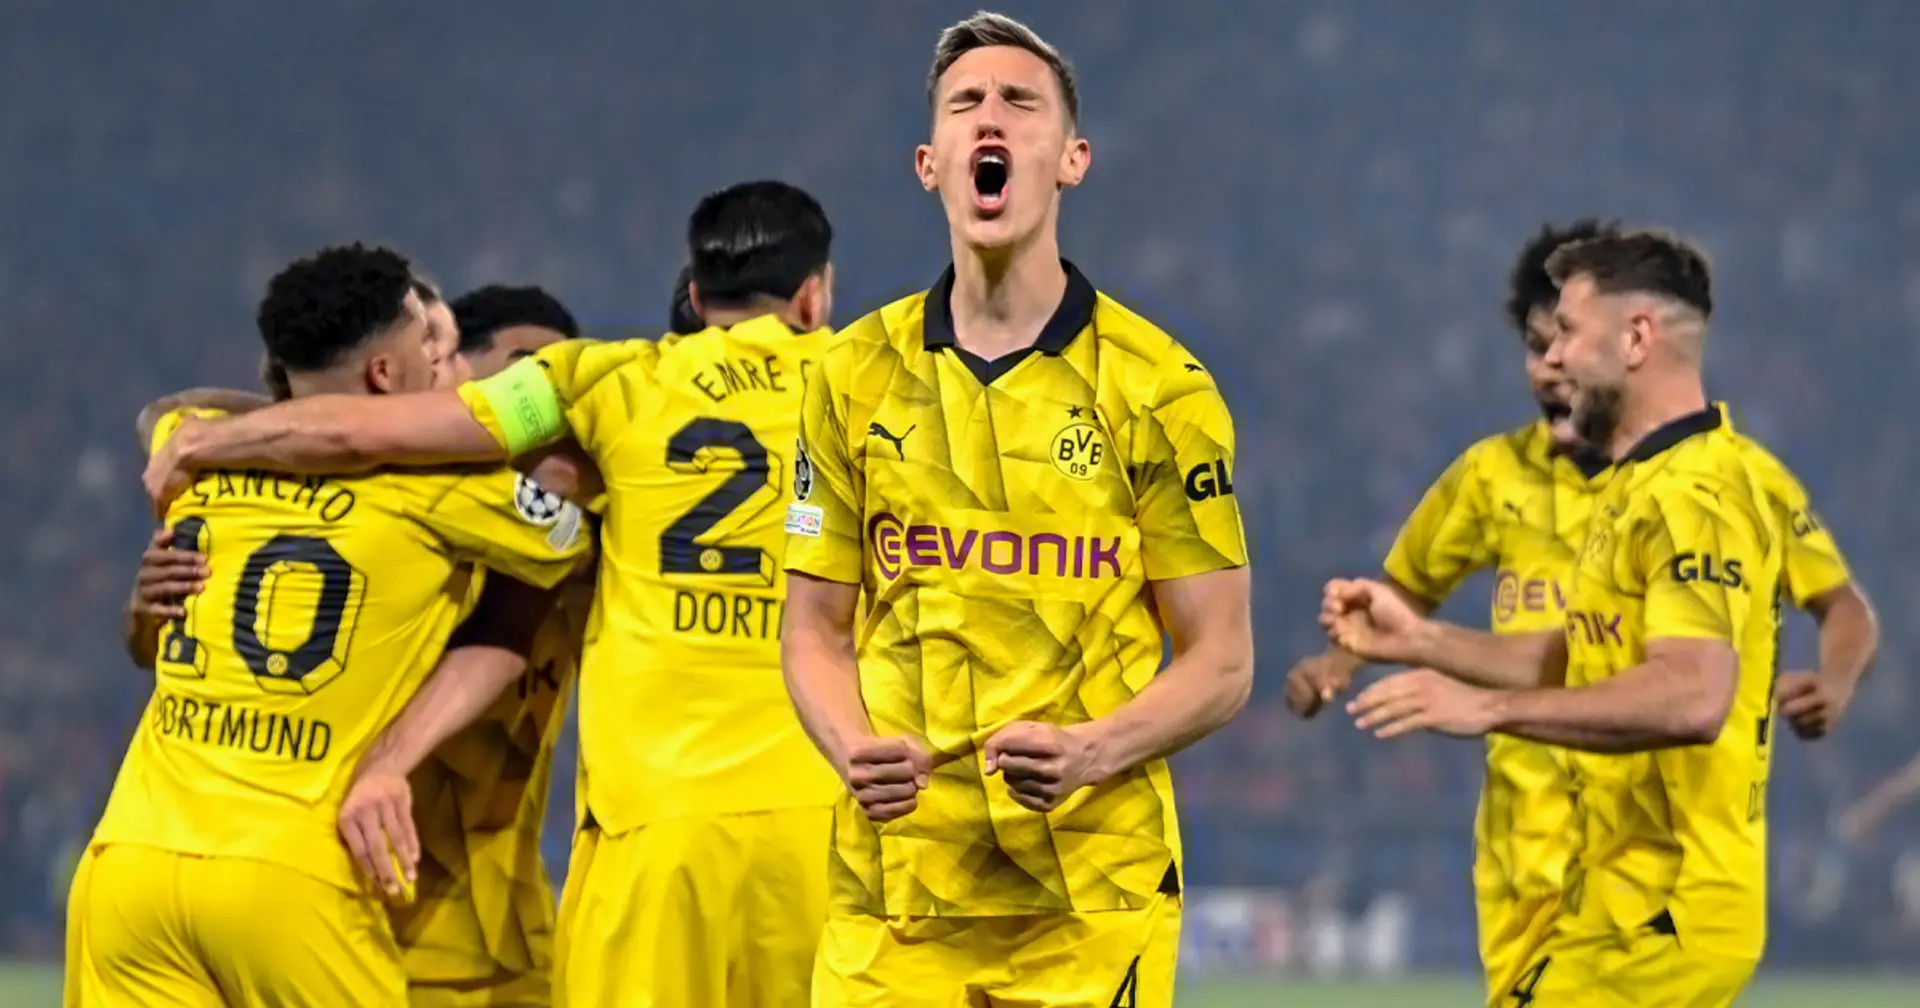 OFFIZIELL: Borussia Dortmund steht im Finale der Champions League!